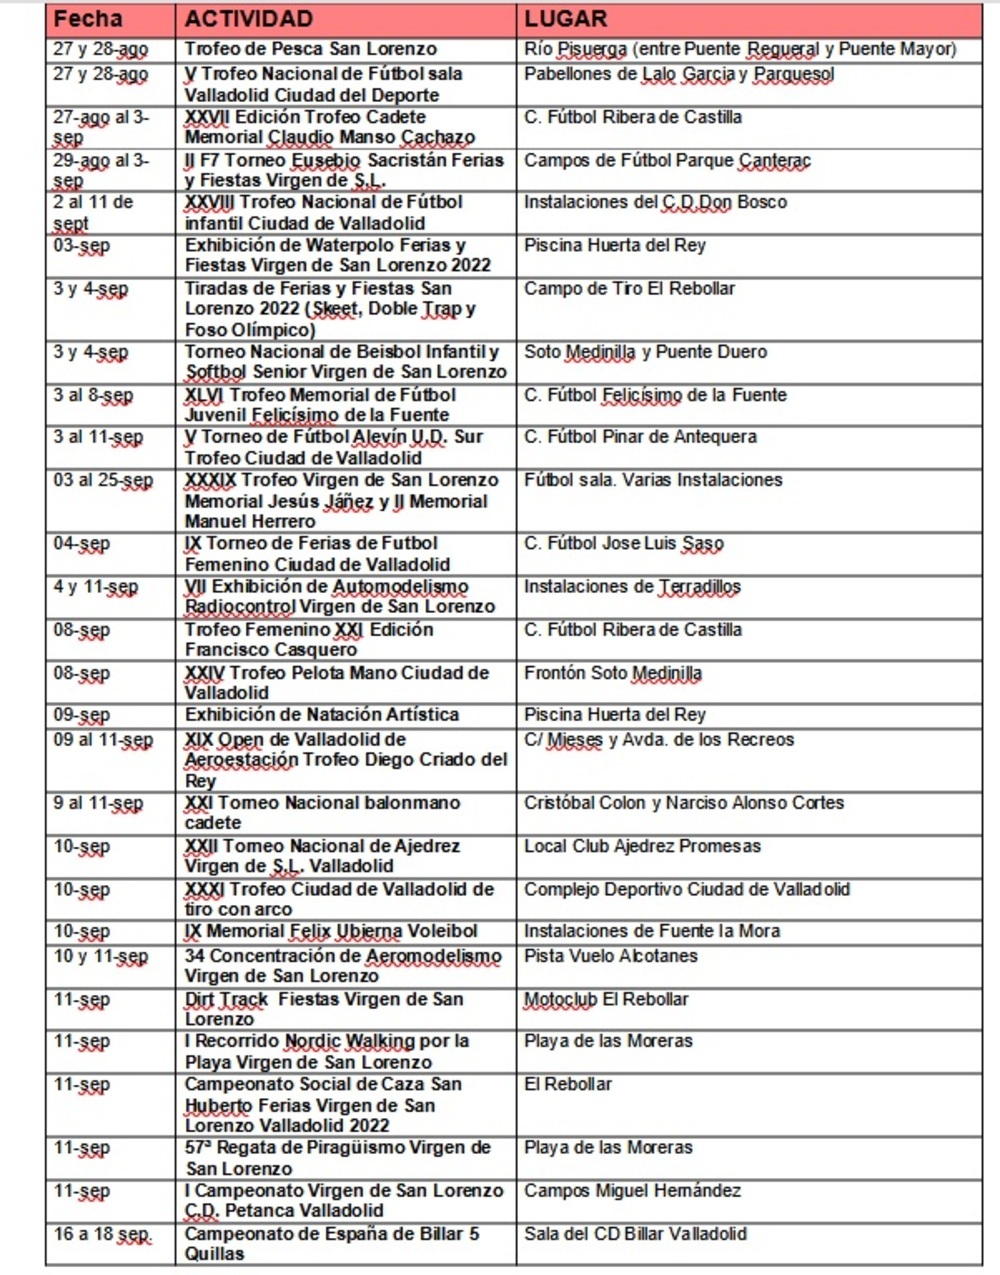 Calendario de actividades deportivas en la Feria y Fiestas de la Virgen de San Lorenzo.